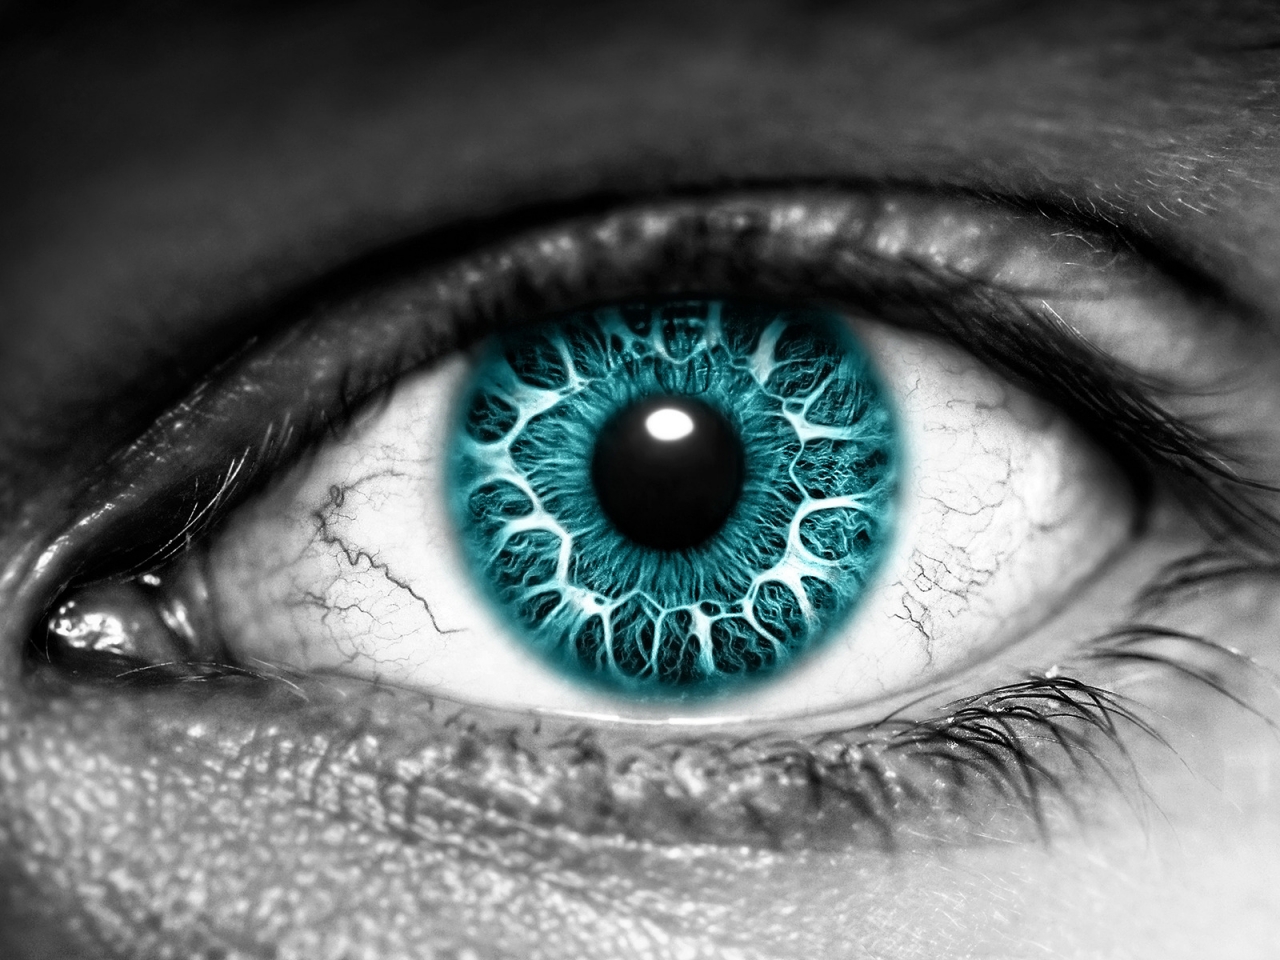 Azure Eye for 1280 x 960 resolution